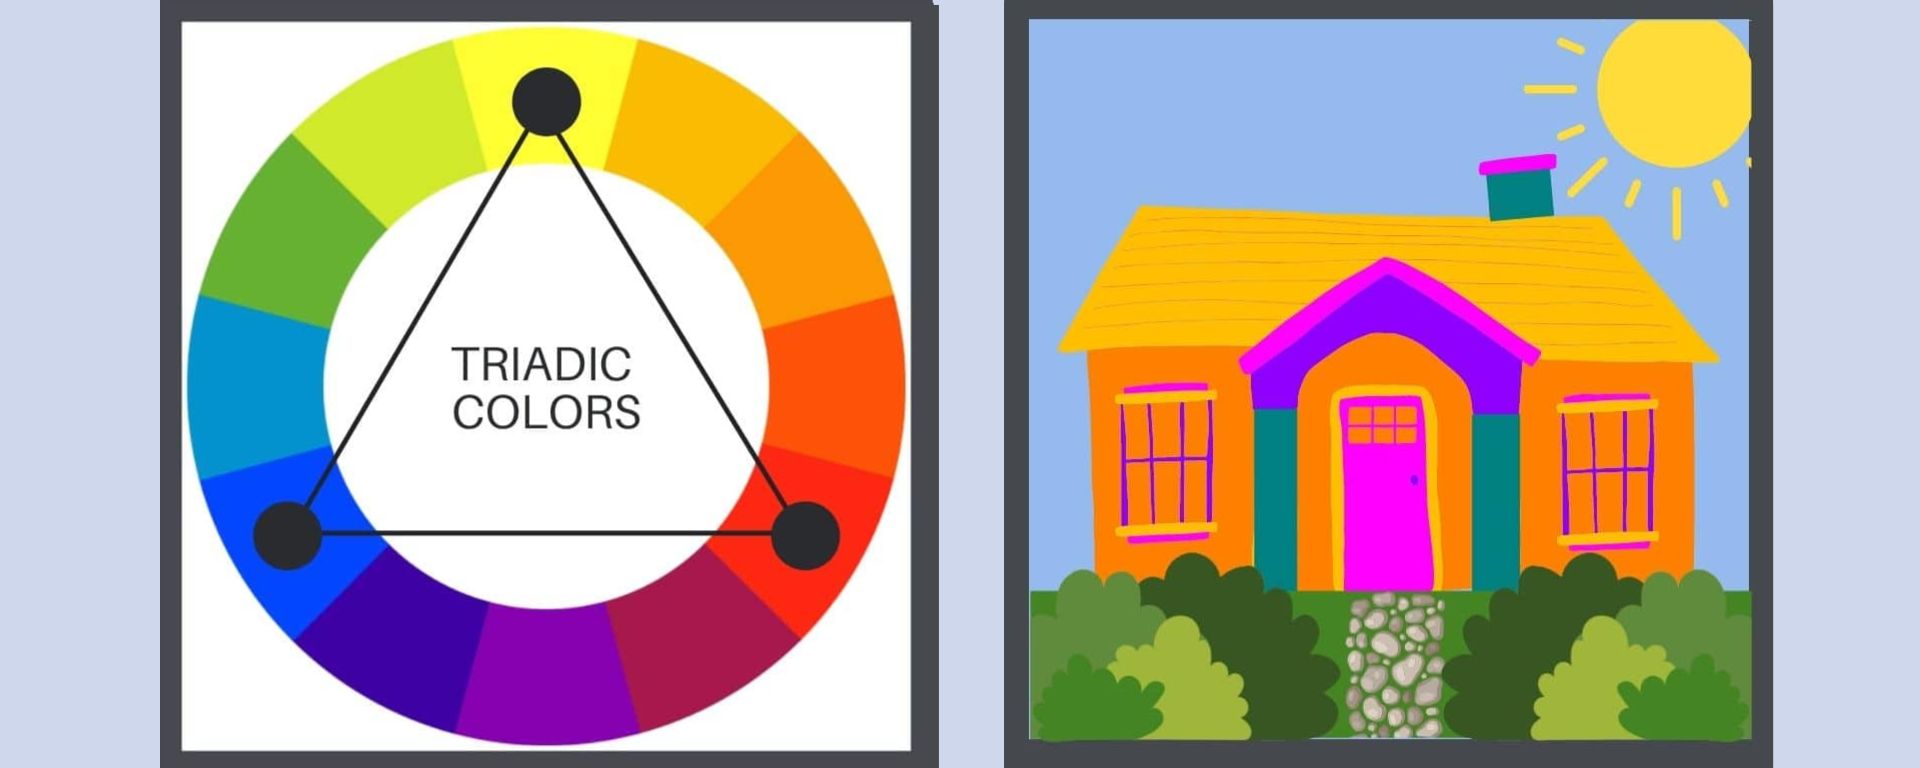 bungalow-colors-harmony-triadic